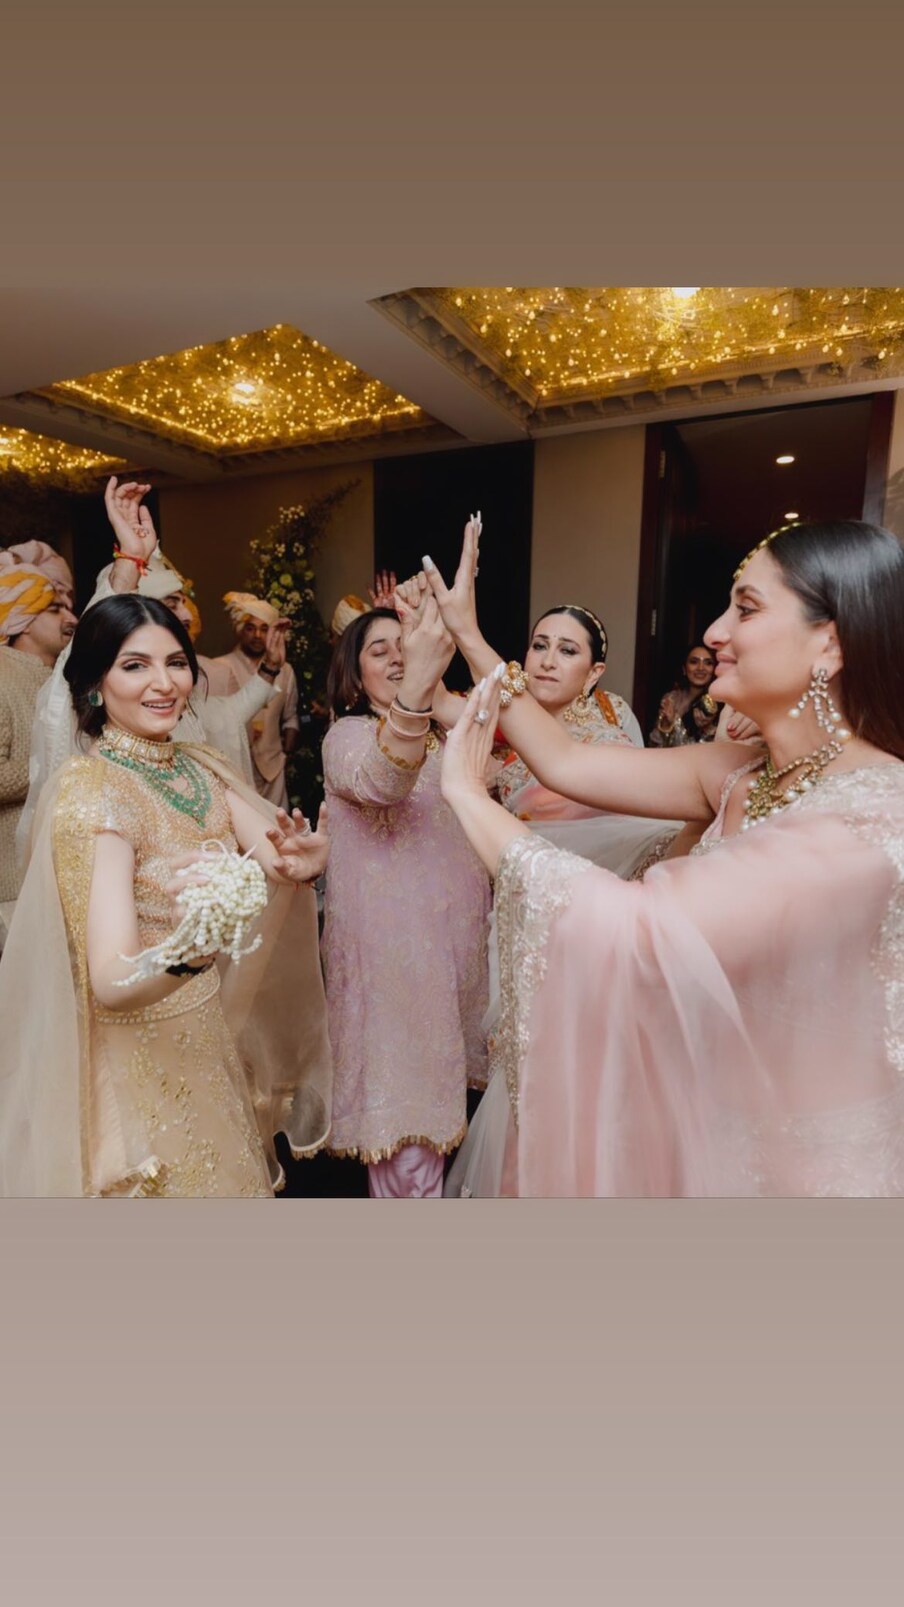 रणबीर कपूर आणि आलिया भट्टच्या लग्नात करीना कपूर खान, करिश्मा कपूरसह आलेल्या पाहुण्यांनी देखील धमाकेदार डान्स केला (फोटो सौजन्य- Insatagram @riddhimakapoorsahniofficial)